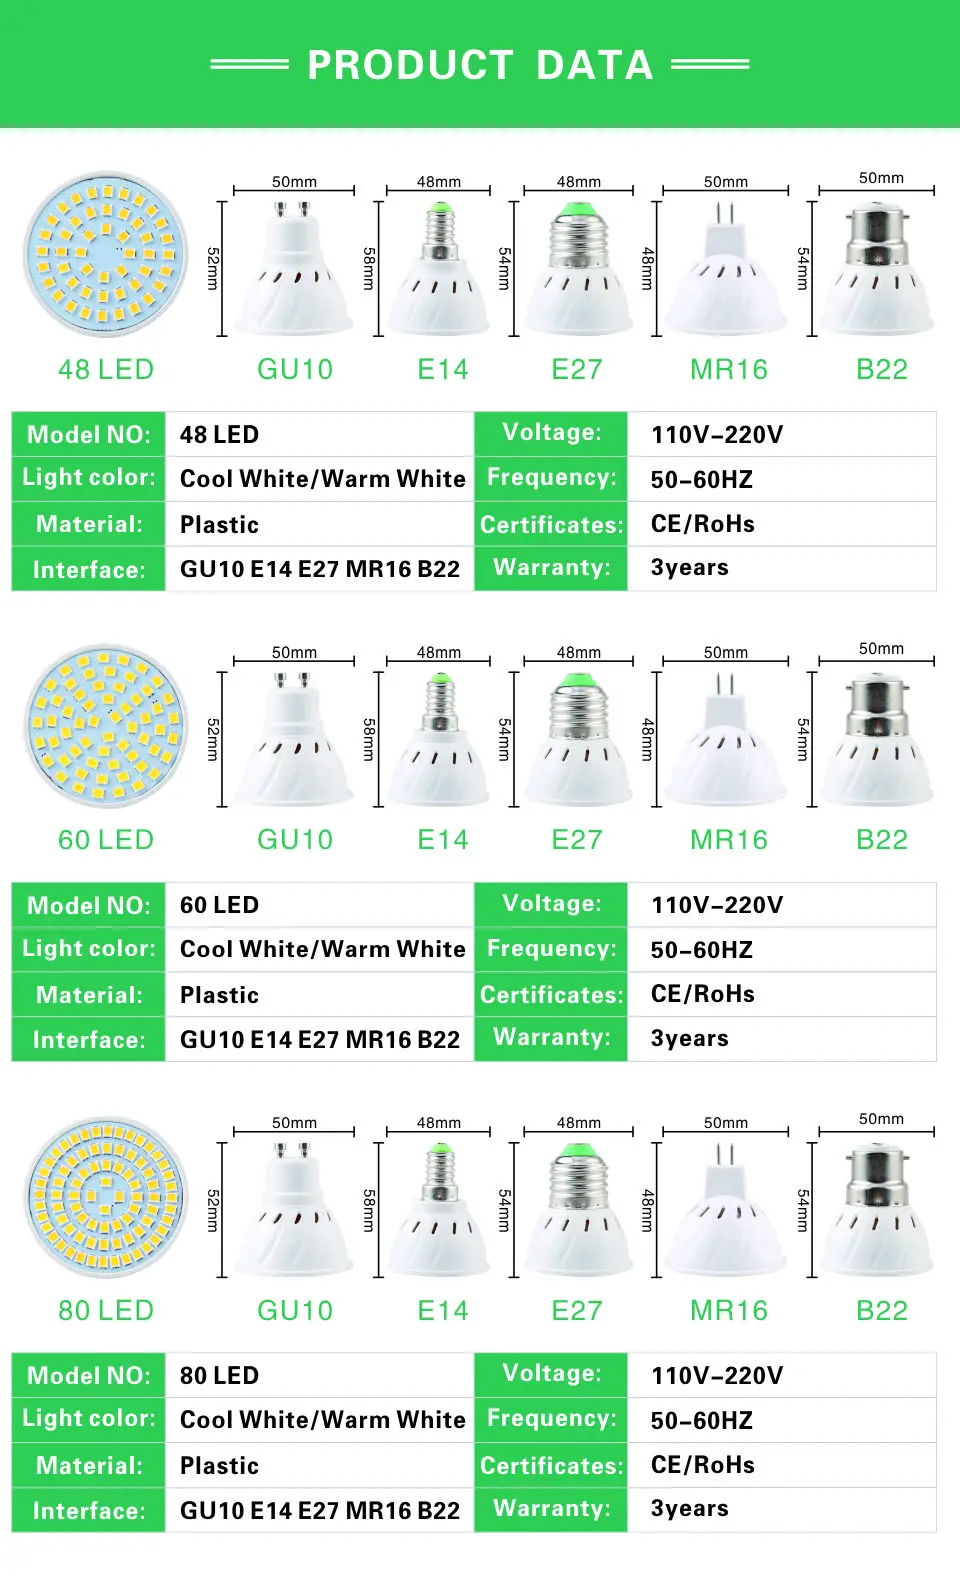 Светодиодный прожектор GU10 E27 MR16 светодиодный лампы AC 220V 2835SMD 48 Светодиодный s 60 Светодиодный s 80 светодиодный s E14 B22 GU5.3 белый/теплый белый светодиодный освещения